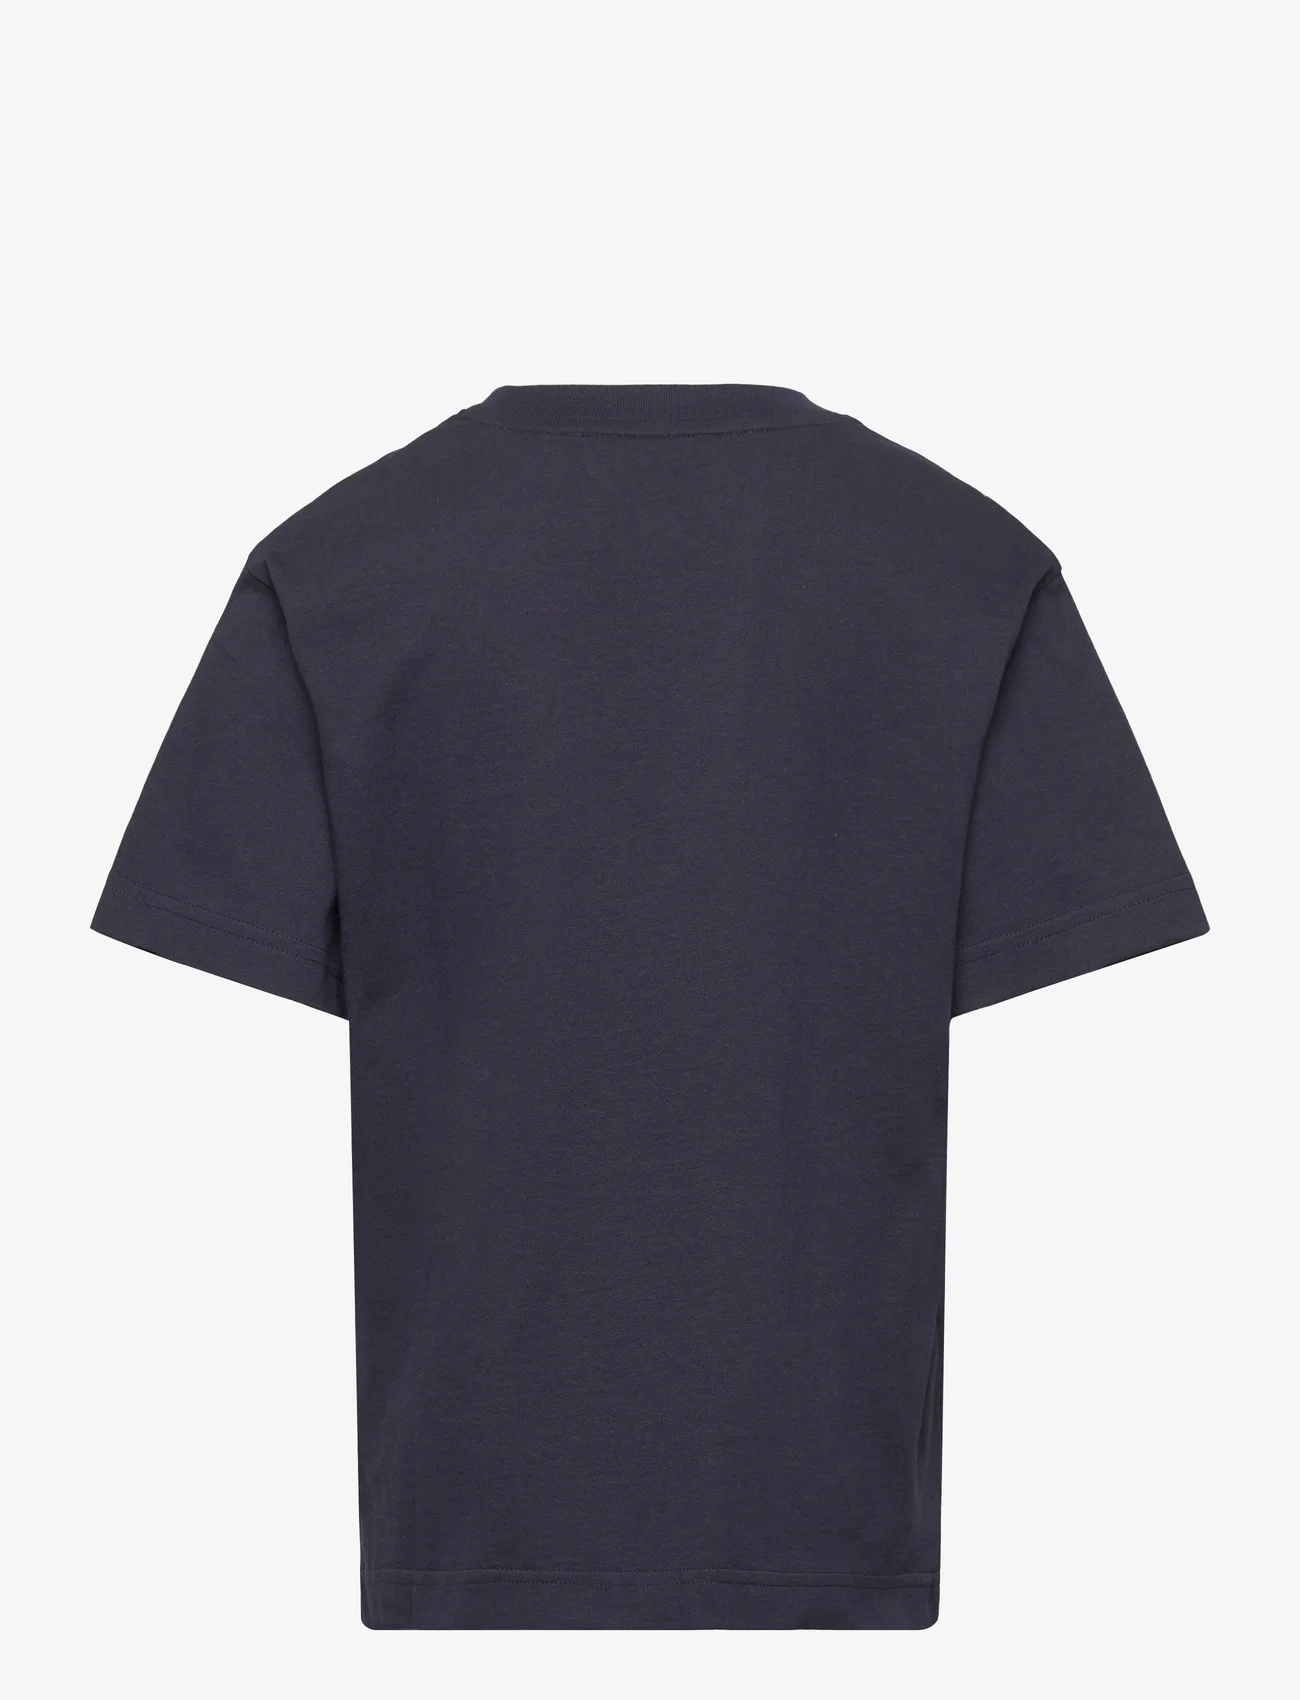 GANT - OVERSIZED GANT USA T-SHIRT - kortermede t-skjorter - evening blue - 1